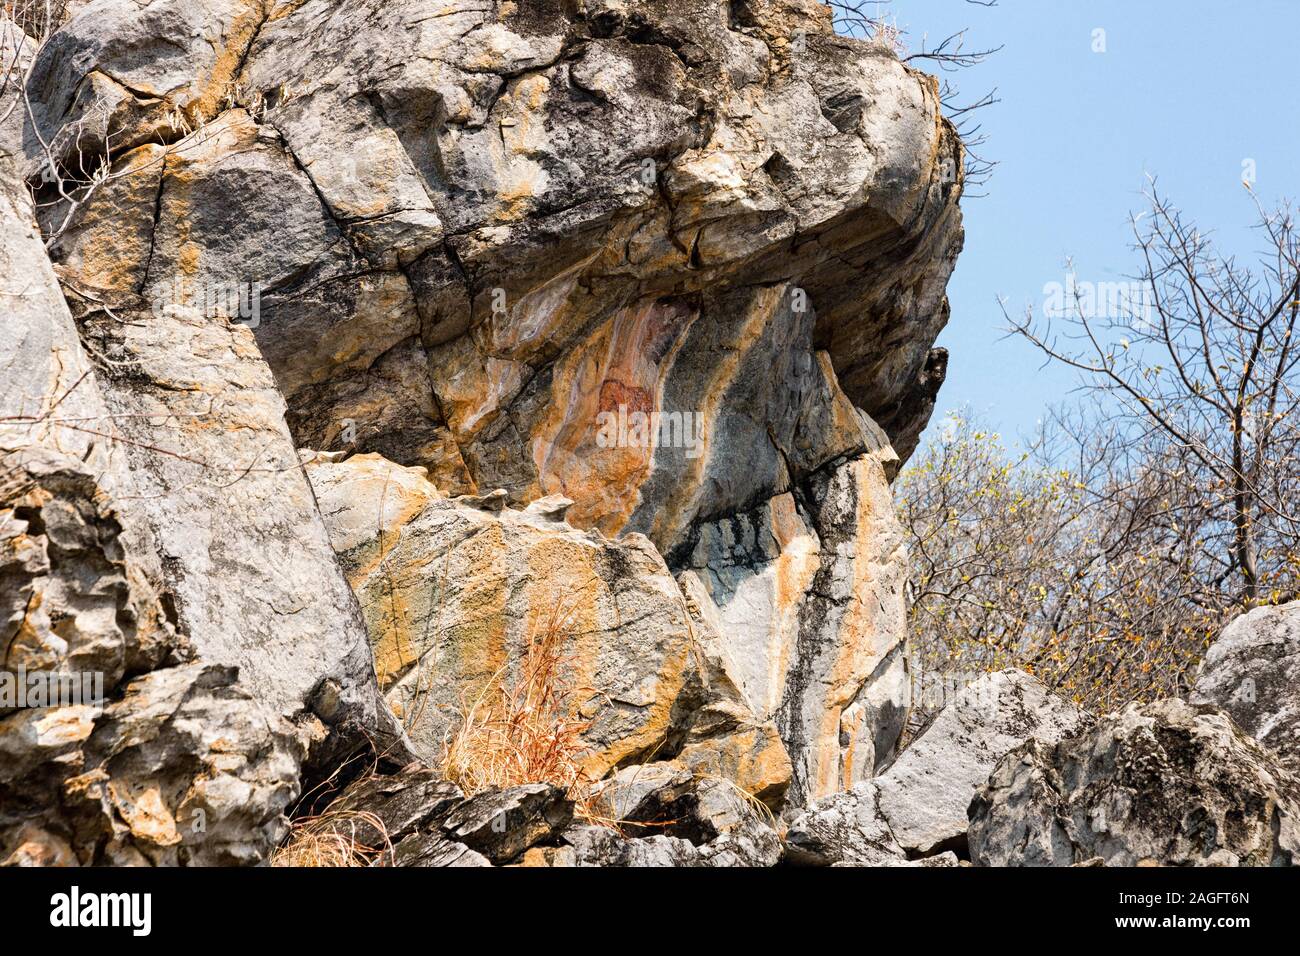 Colline di Tsodilo, pitture rupestri di leone, Louvre del deserto, colline isolate nel deserto di kalahari, Botswana, Africa Meridionale, Africa Foto Stock